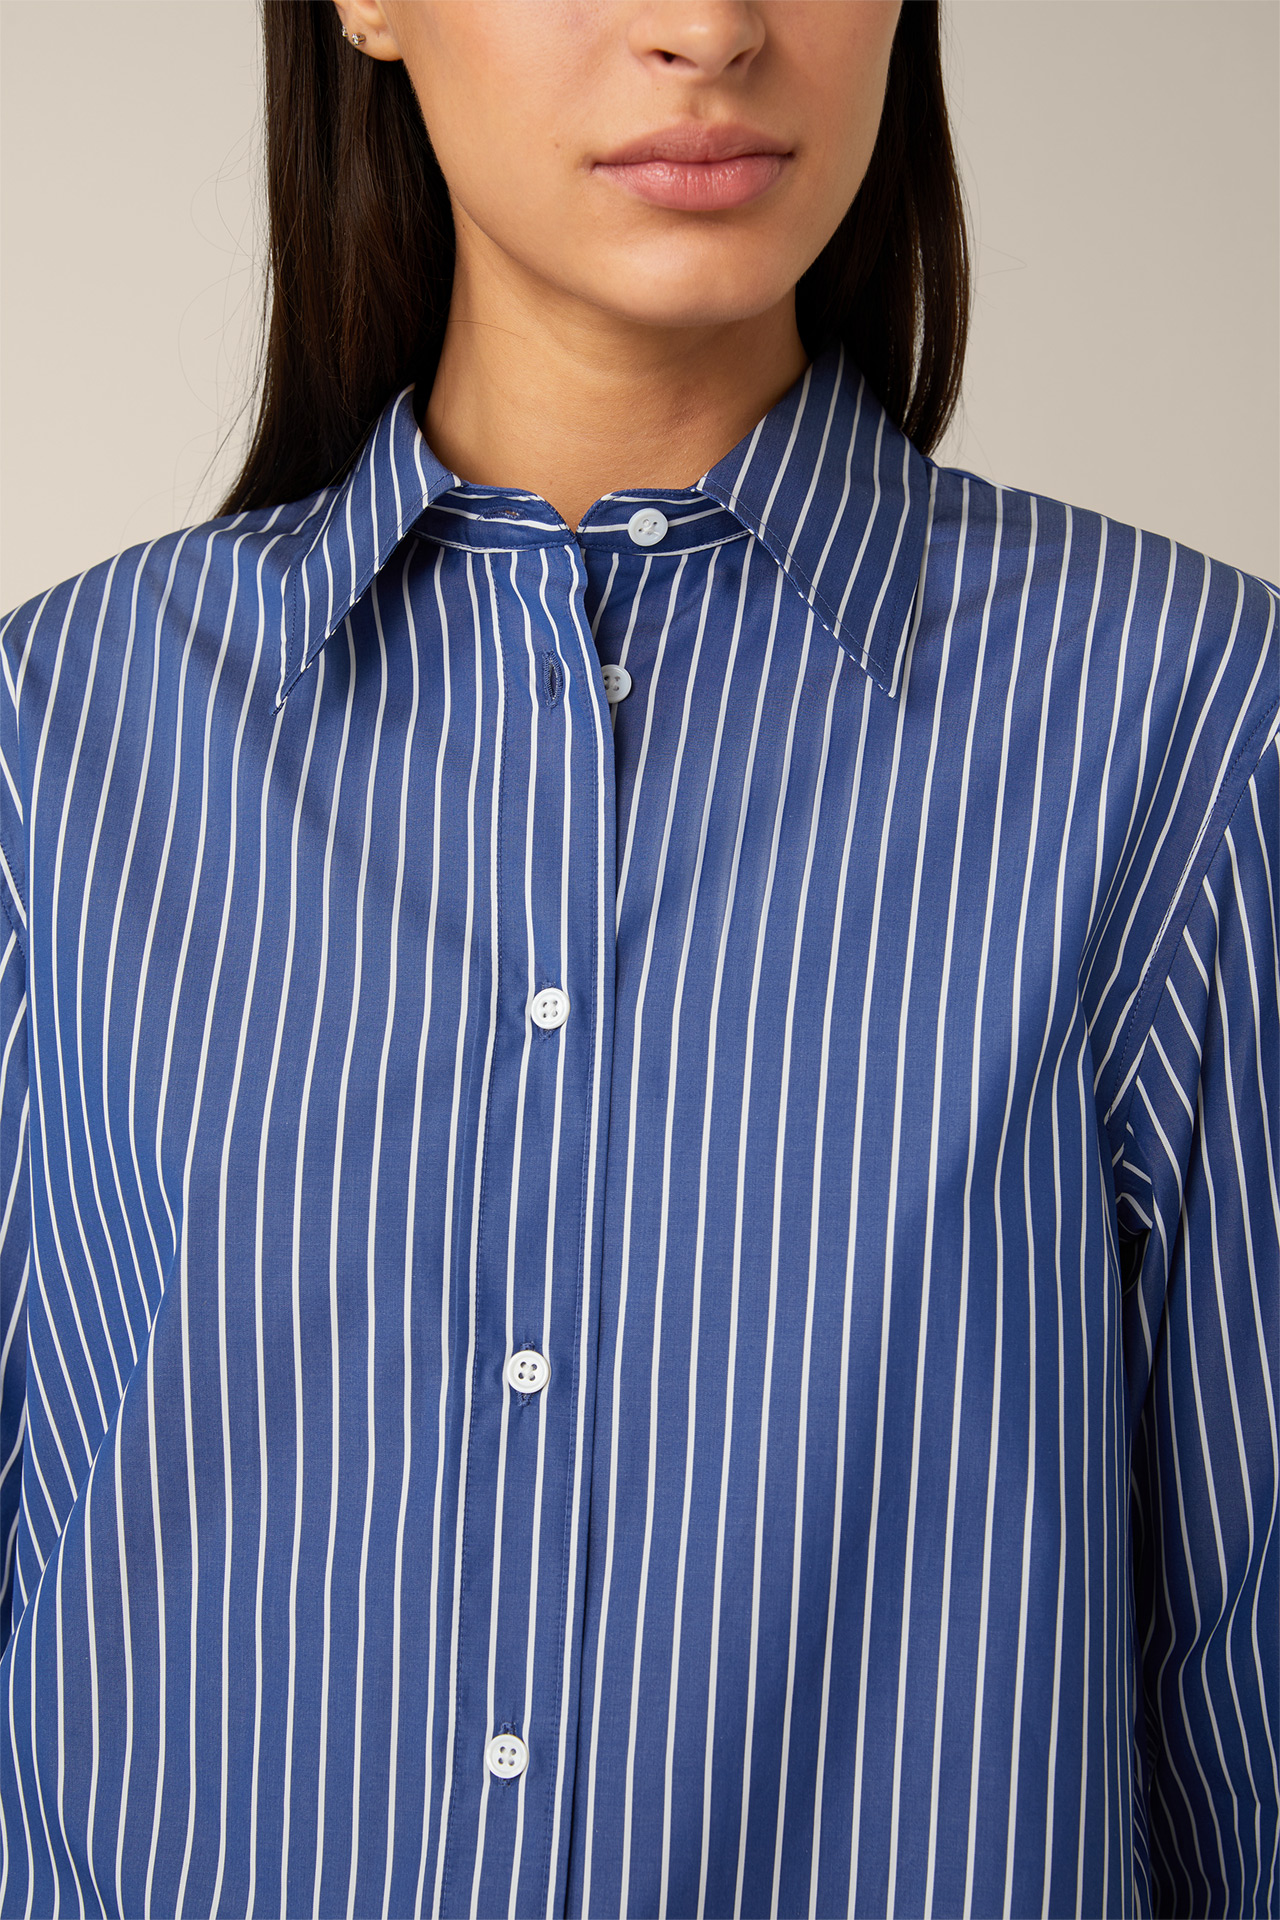 Popeline-Baumwoll-Streifen-Hemd-Bluse in Blau-Weiß gestreift